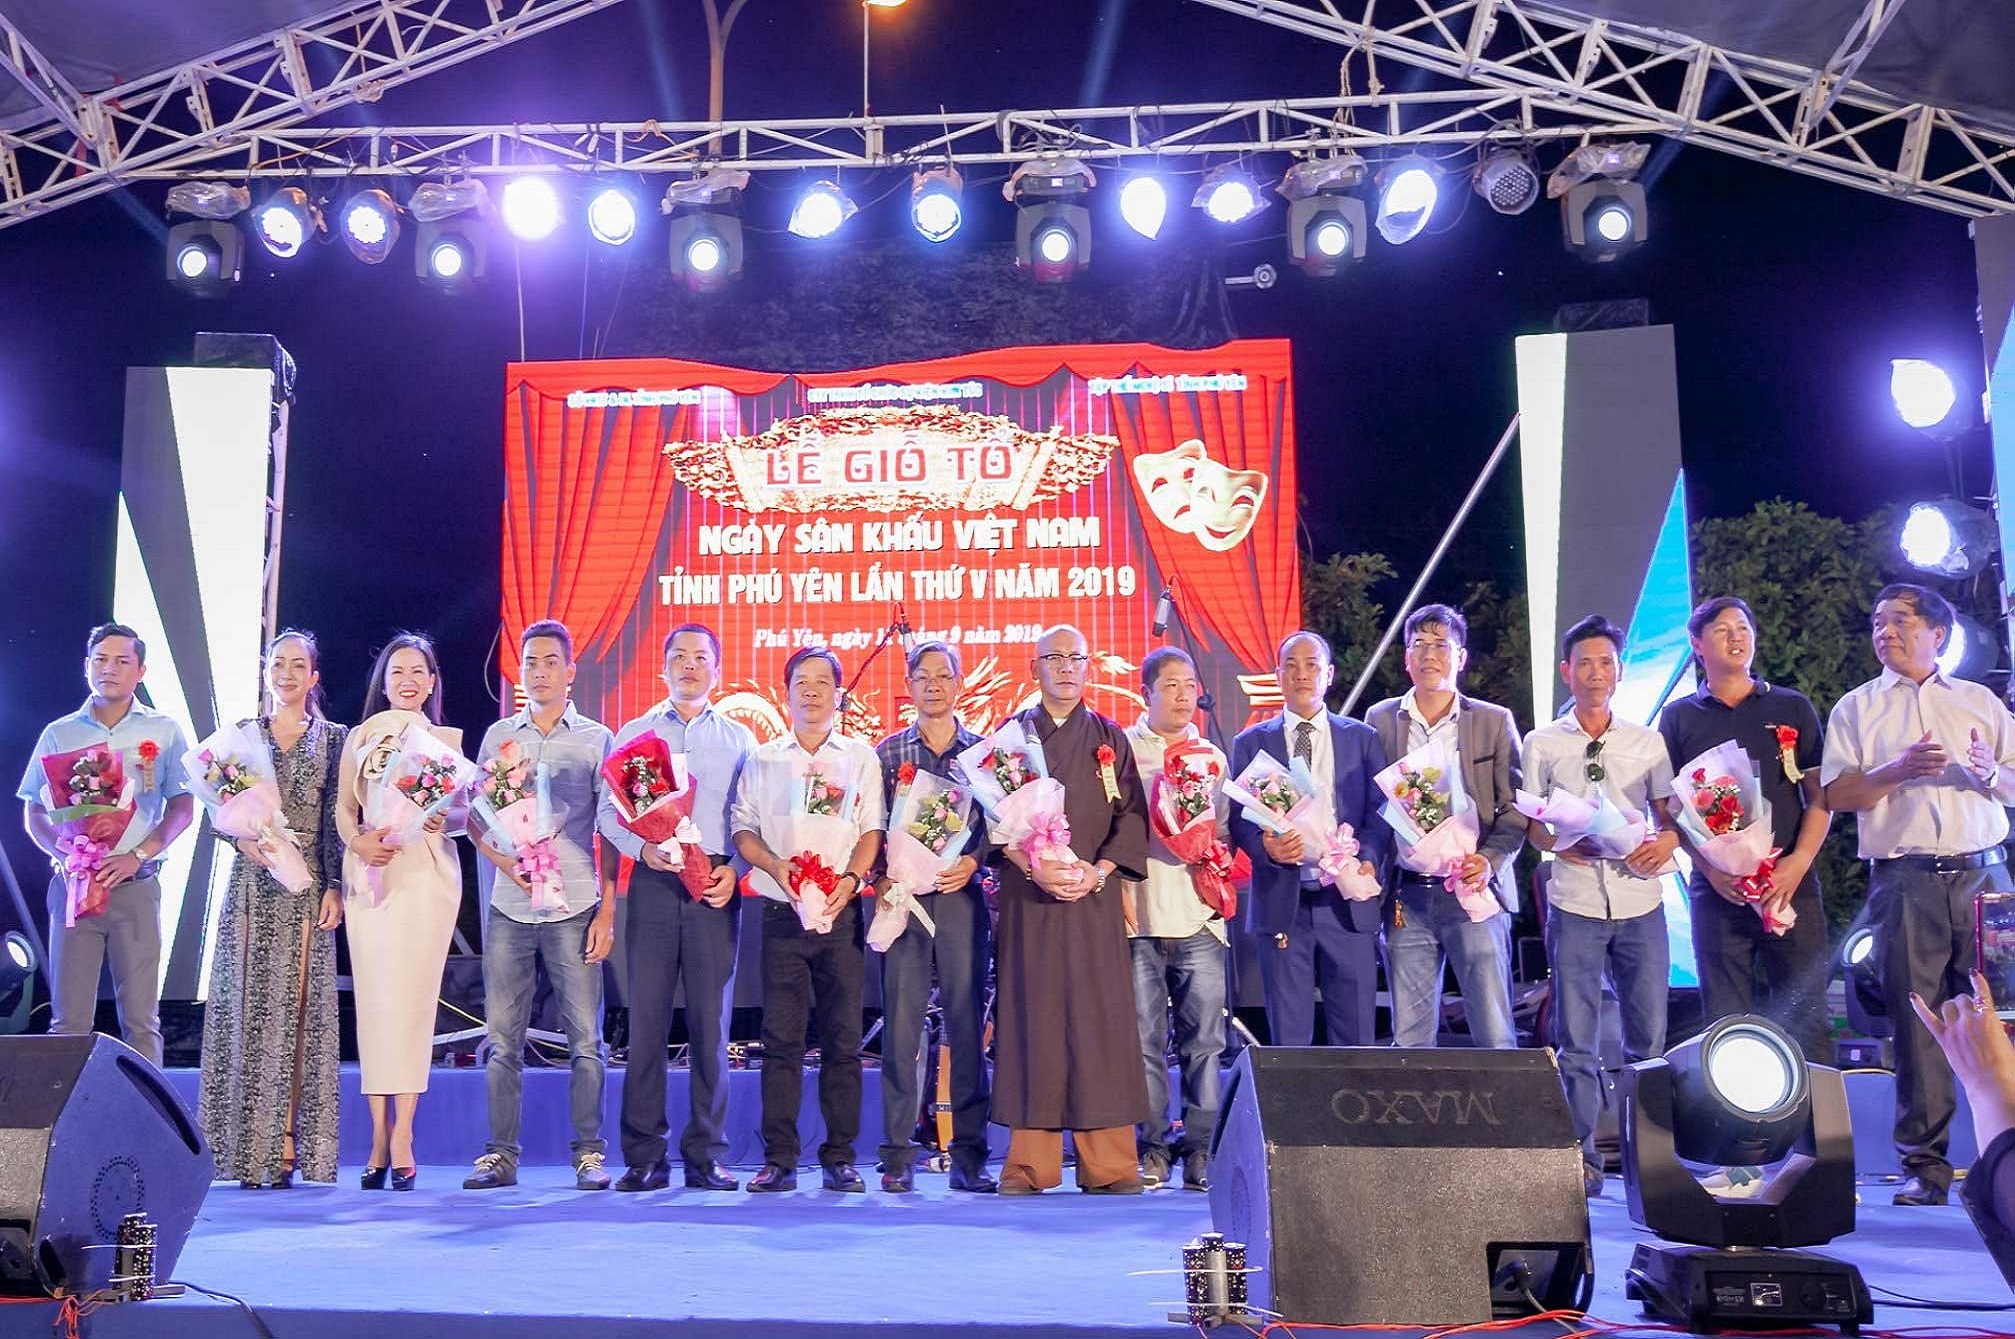 Sự kiện Lễ giỗ tổ sân khấu tỉnh Phú Yên 2019